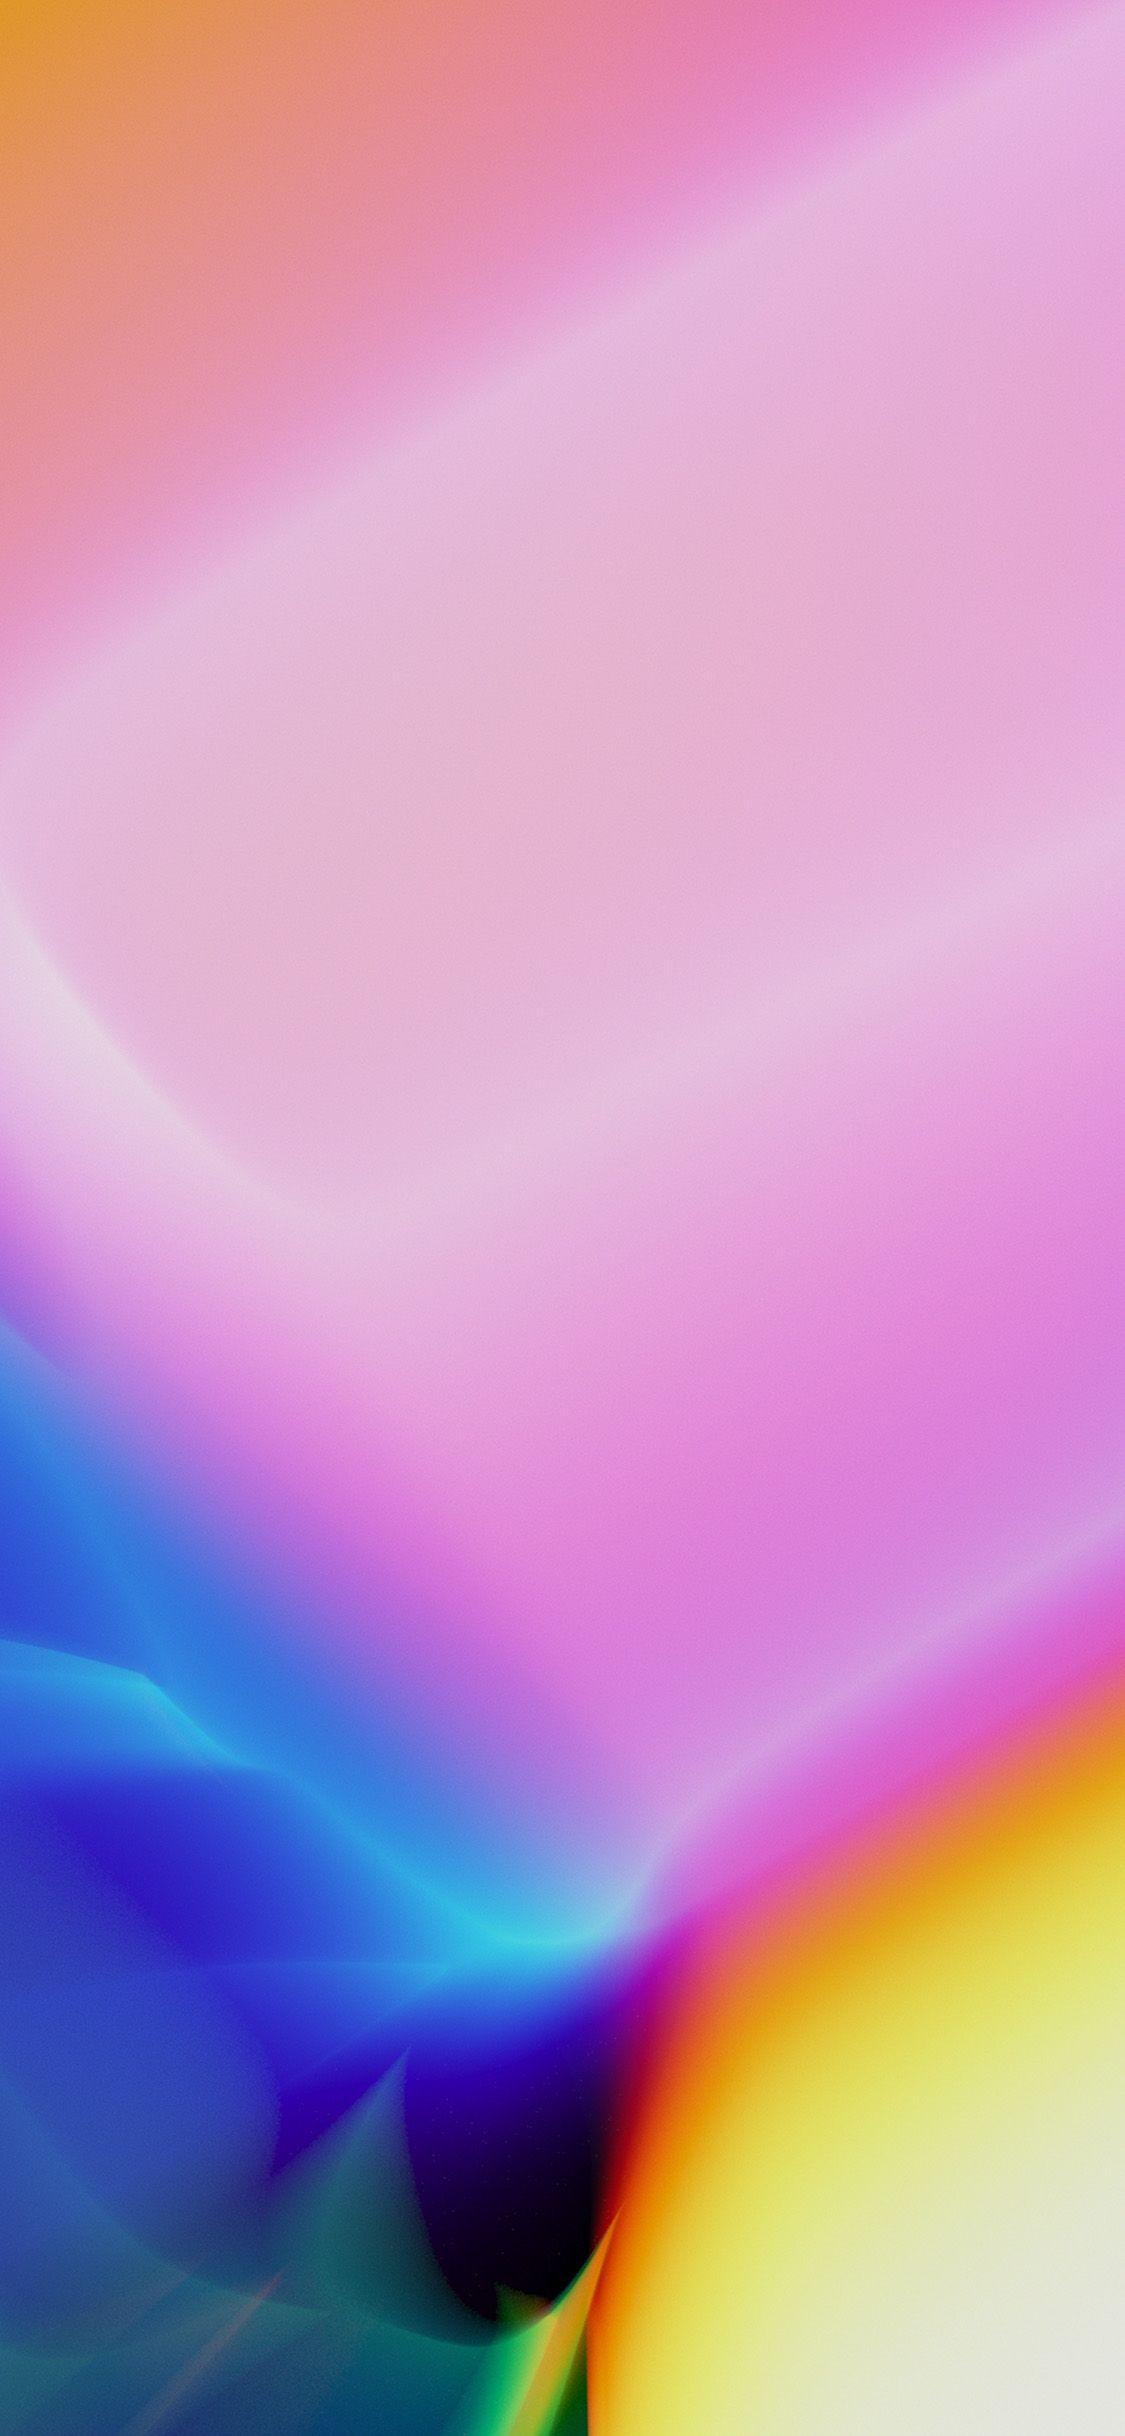 1125x2436 Tải xuống hình nền quang phổ màu này cho iPhone